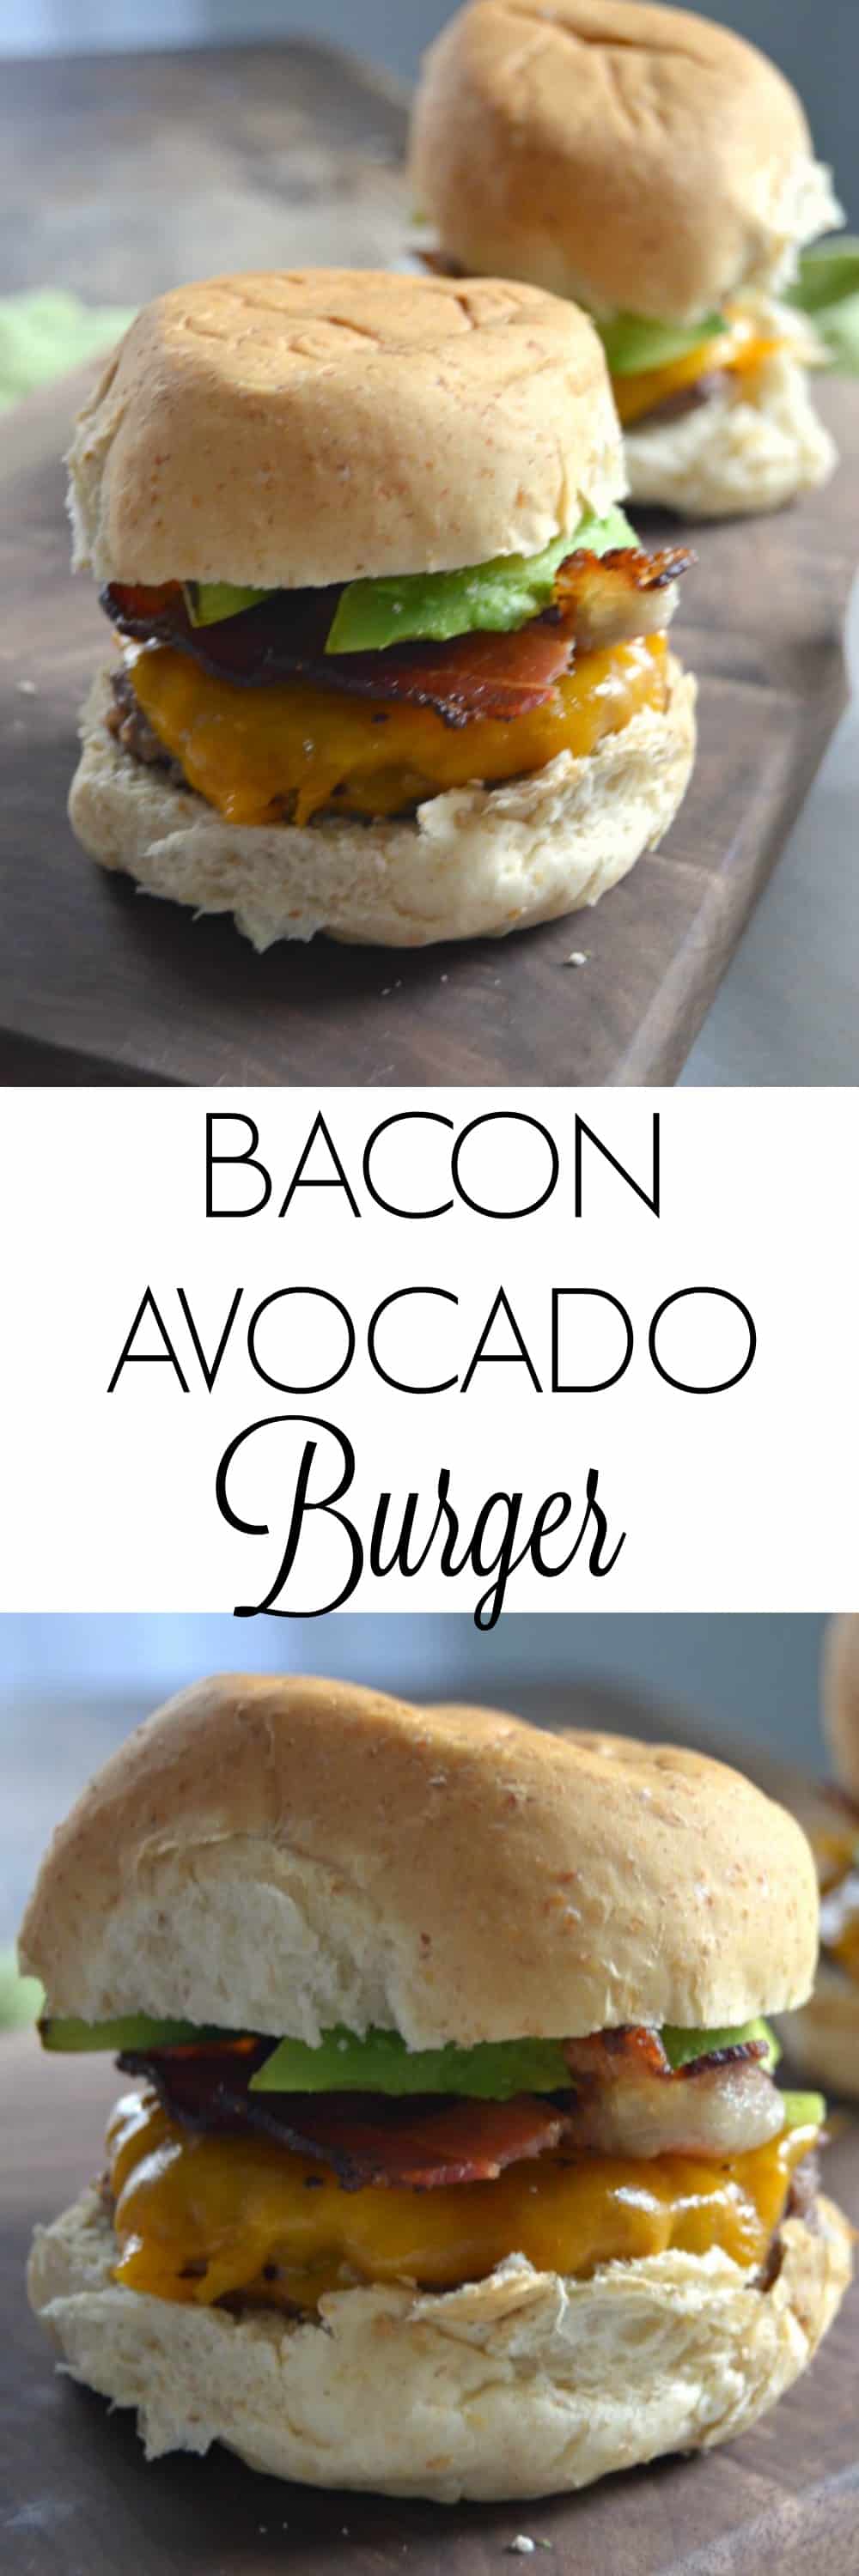 Bacon Avocado Burger - Bacon Burger - Burger Recipe Easy - Avocado Burger - Grilling Recipe 